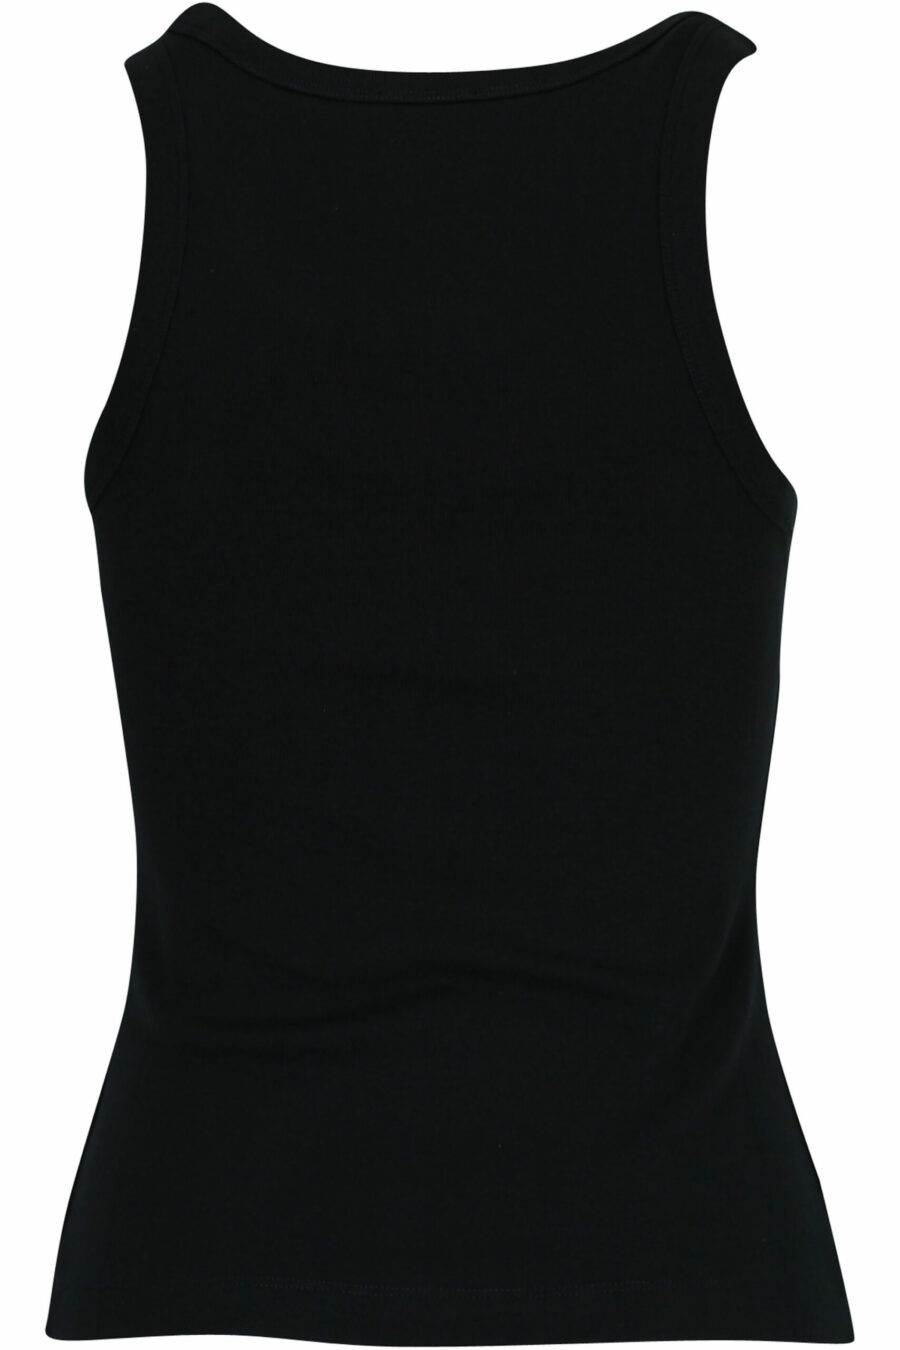 T-shirt noir sans manches avec logo "boke flower" blanc - 3612230586635 1 à l'échelle